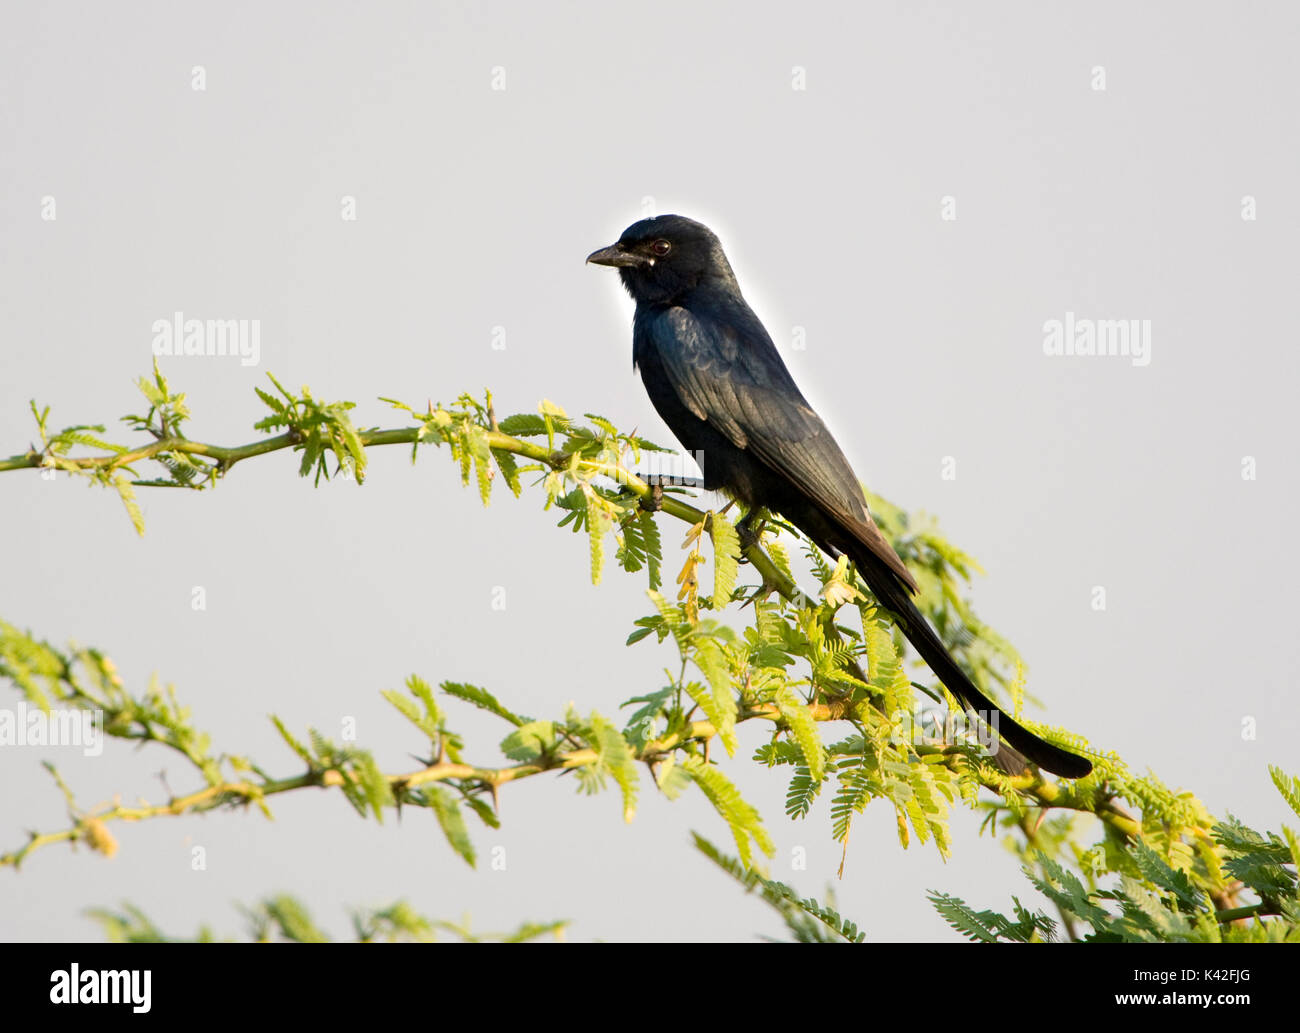 Schwarz Drongo, Dicrurus macrocerus, in Strauch Ästen thront, Nalsarovar Vogelschutzgebiet, Gujarat, Indien. Stockfoto